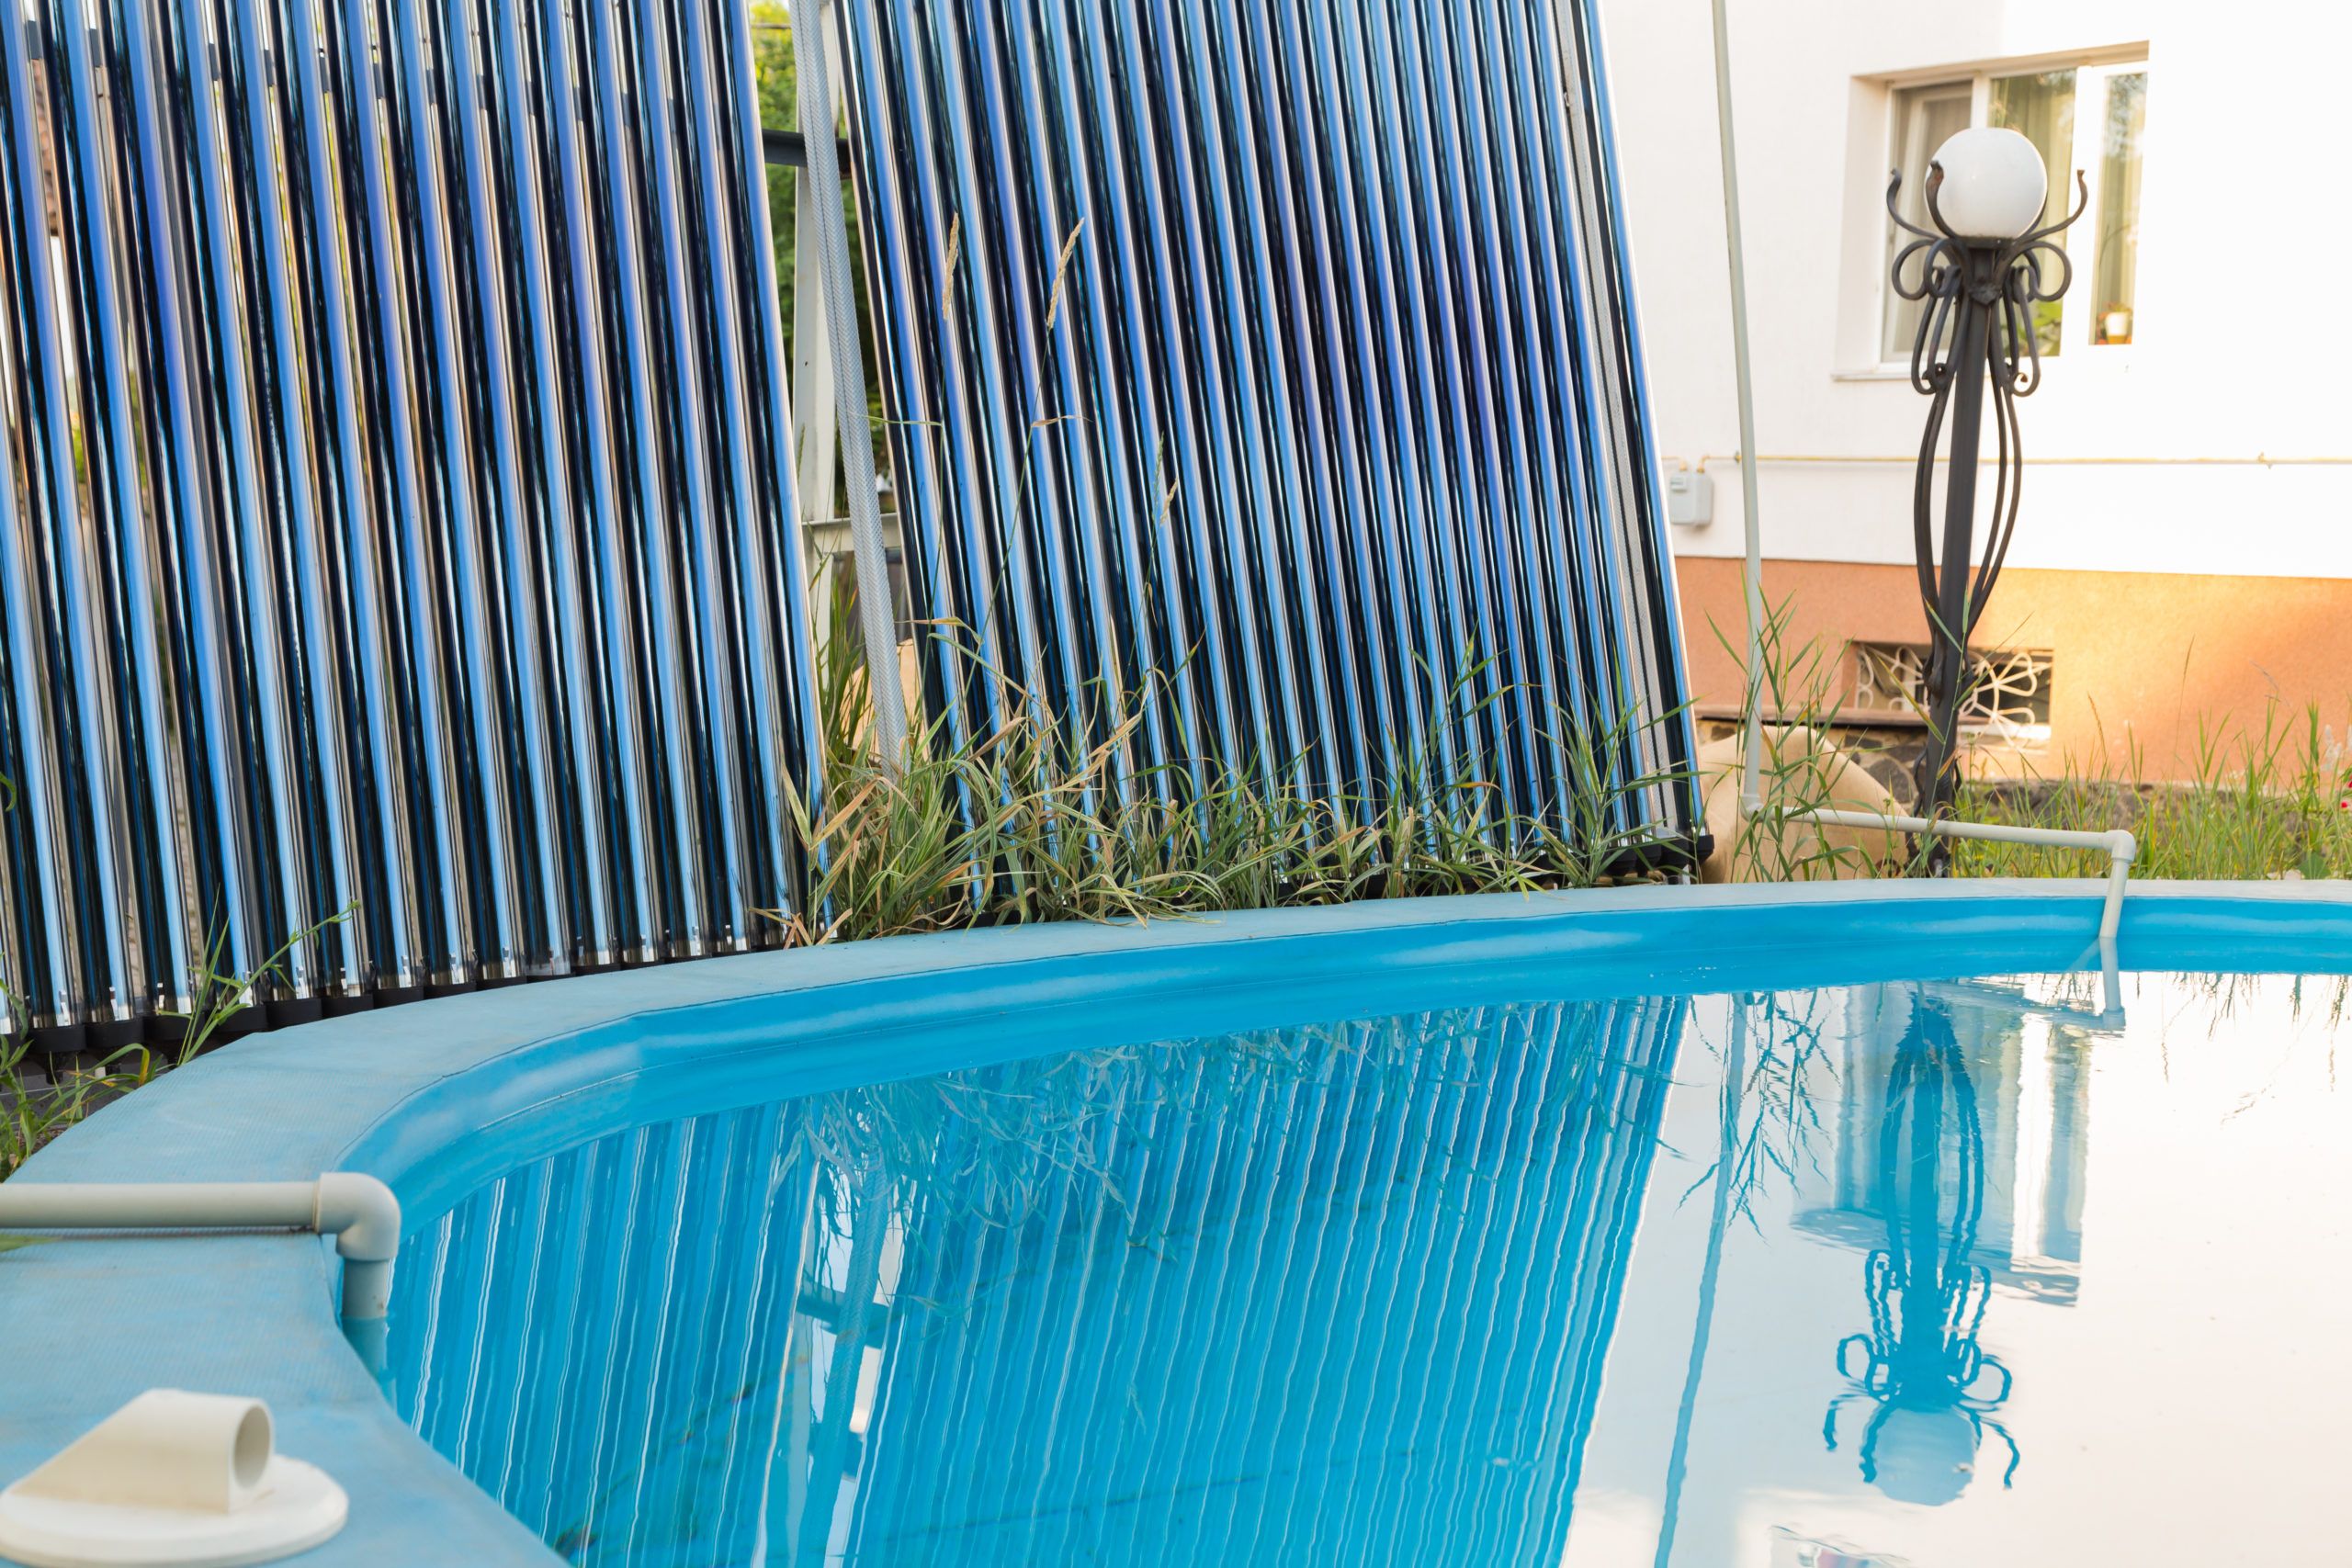 Choisir un chauffage solaire de piscine : les points essentiels -  ChauffagePiscine.com